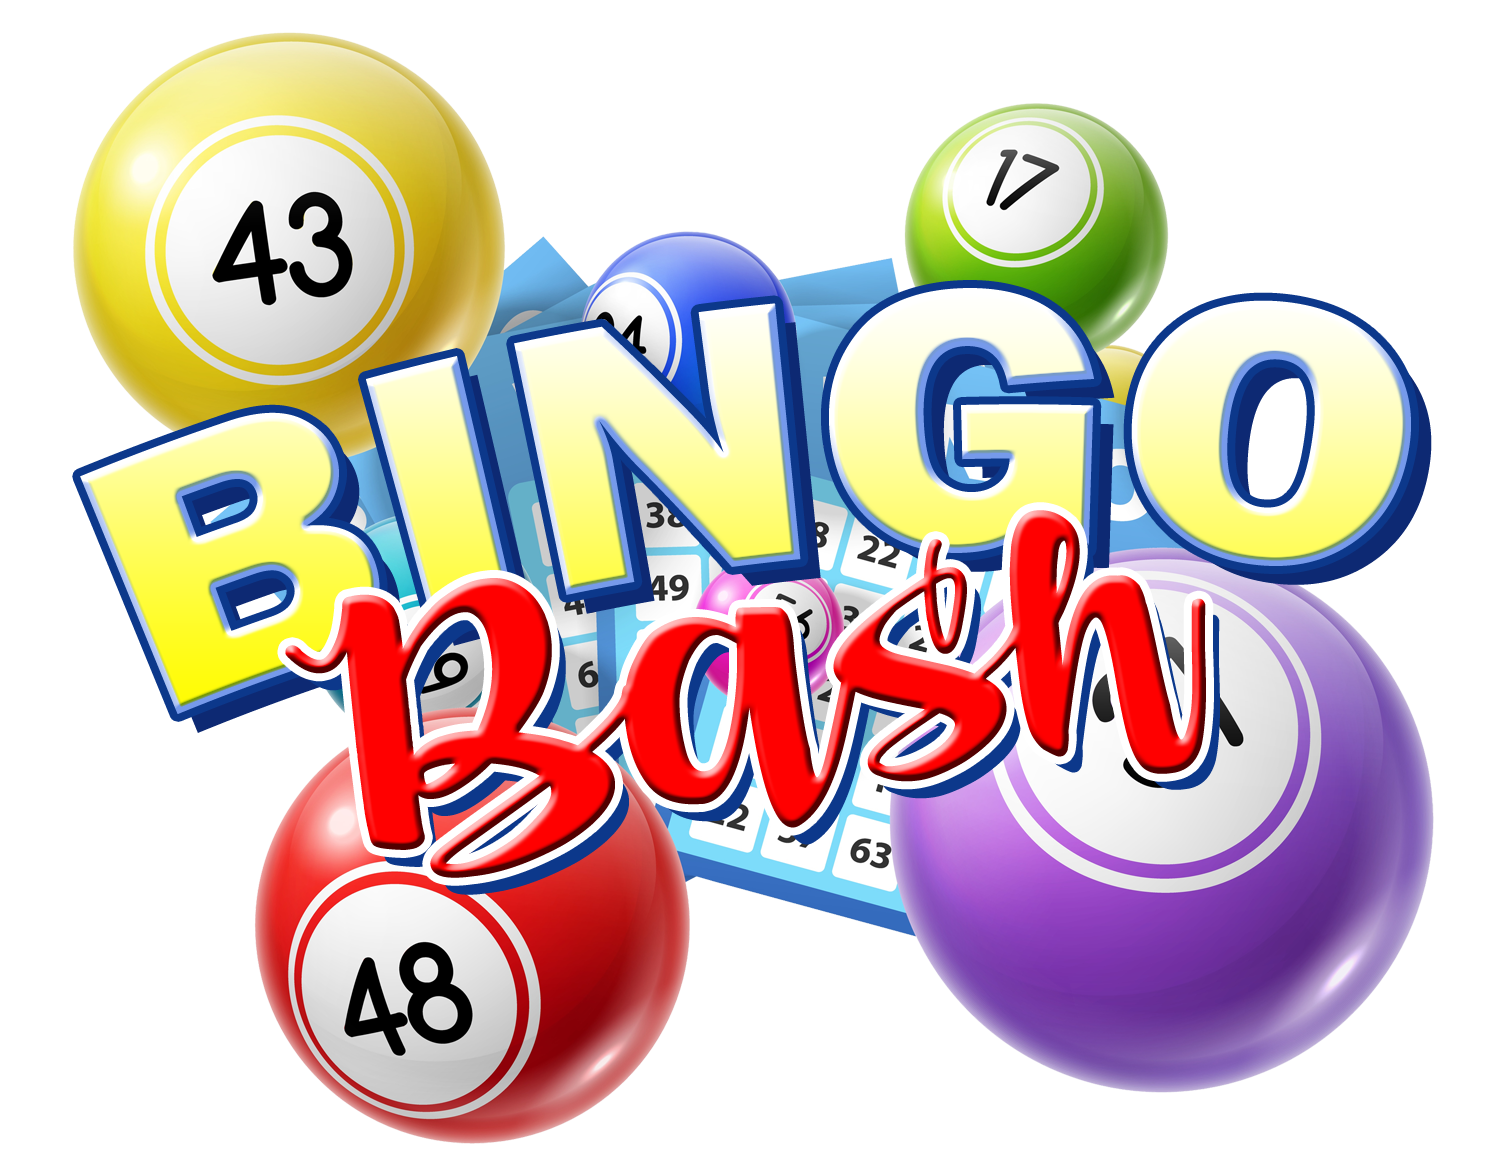 7 seas casino bingo